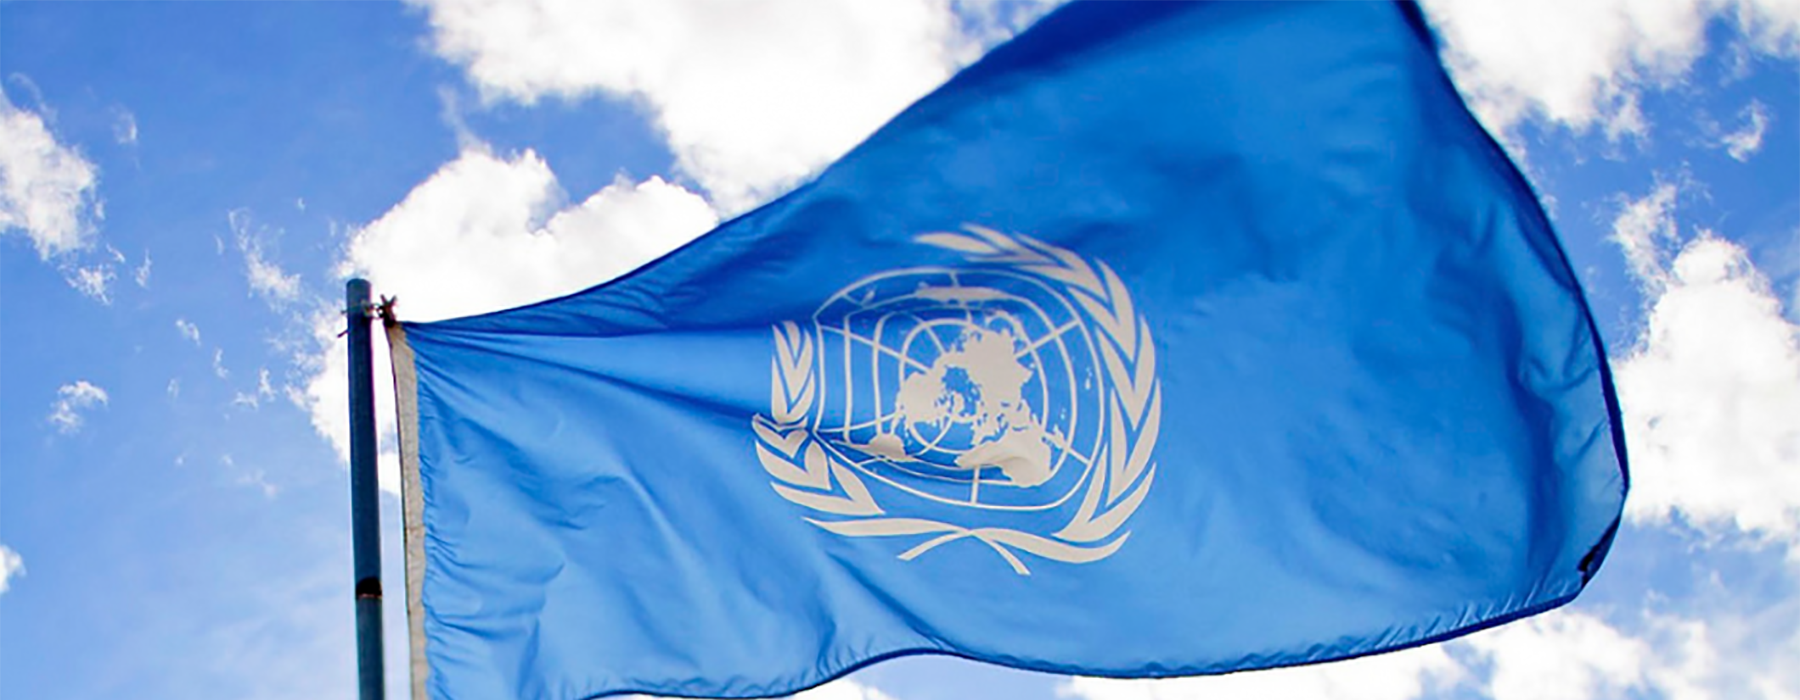 Bandiera delle Nazioni Unite sventola con sullo sfondo cielo e nuvole